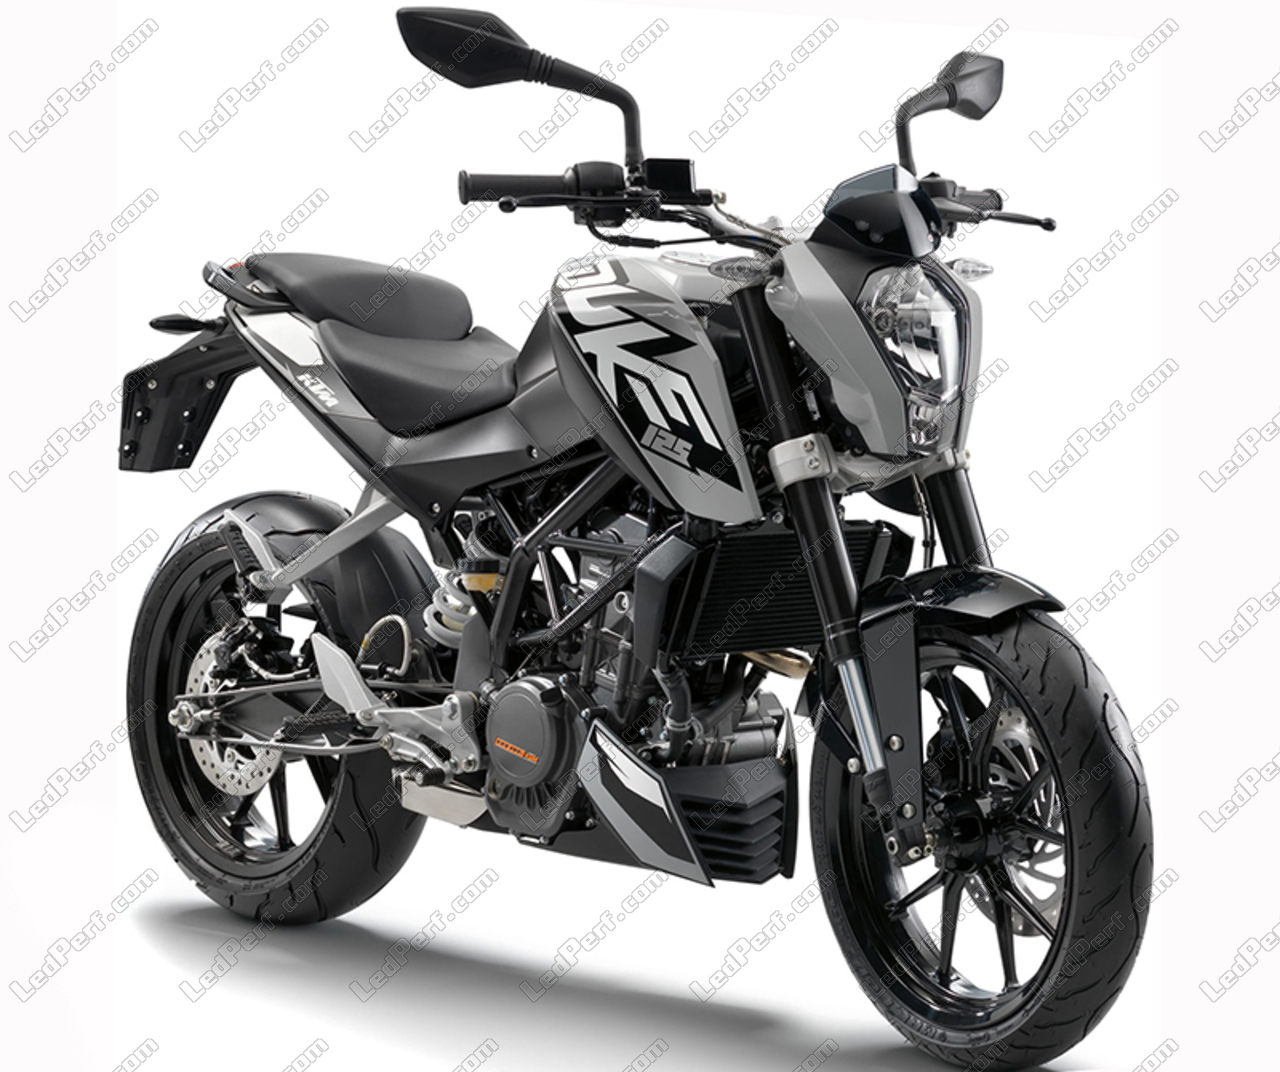 https://www.ledperf.co.uk/images/models/ledperf.com/._1/led-bulb-kit-for-ktm-duke-125-motorcycle_53818.jpg